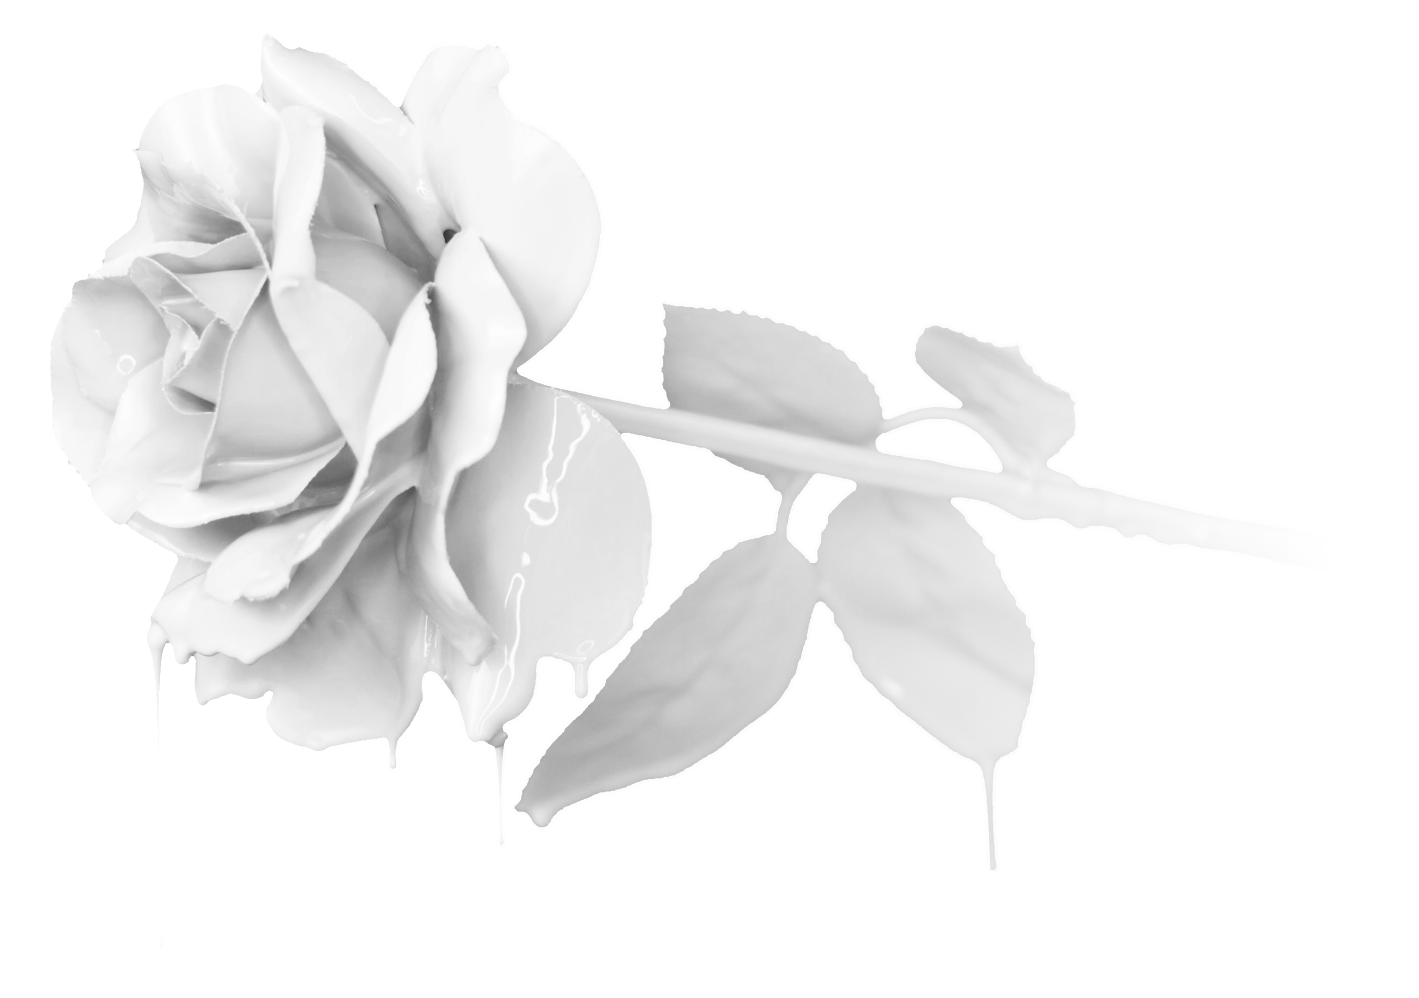 The White Rose logo